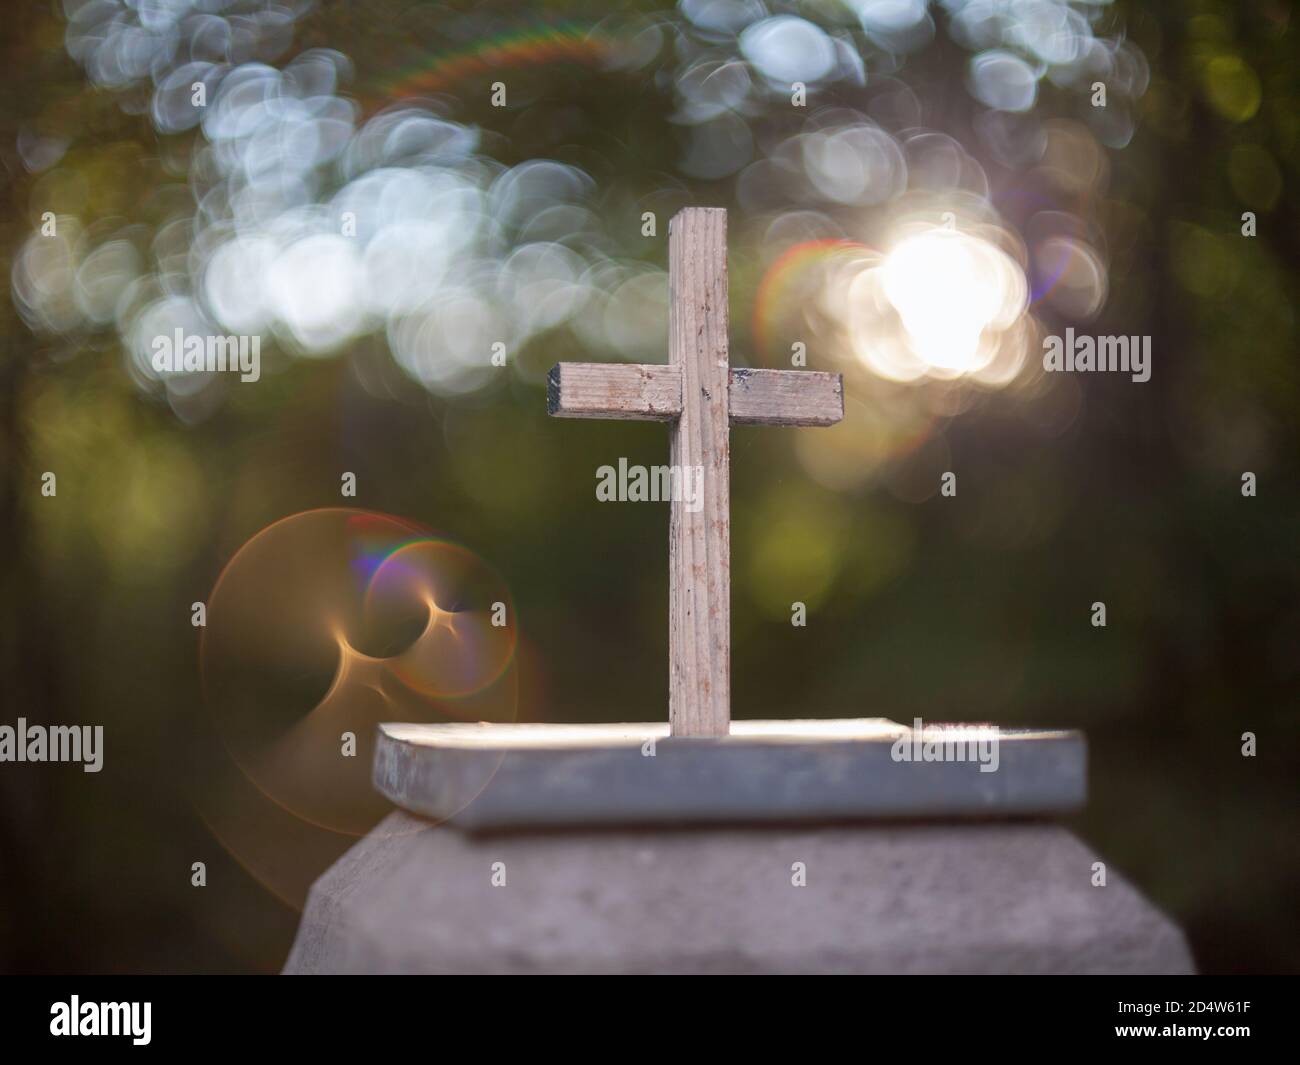 Pequeña cruz católica de madera sobre un pedestal de piedra con un fondo agradable y una reflexión inusual. Foto de stock